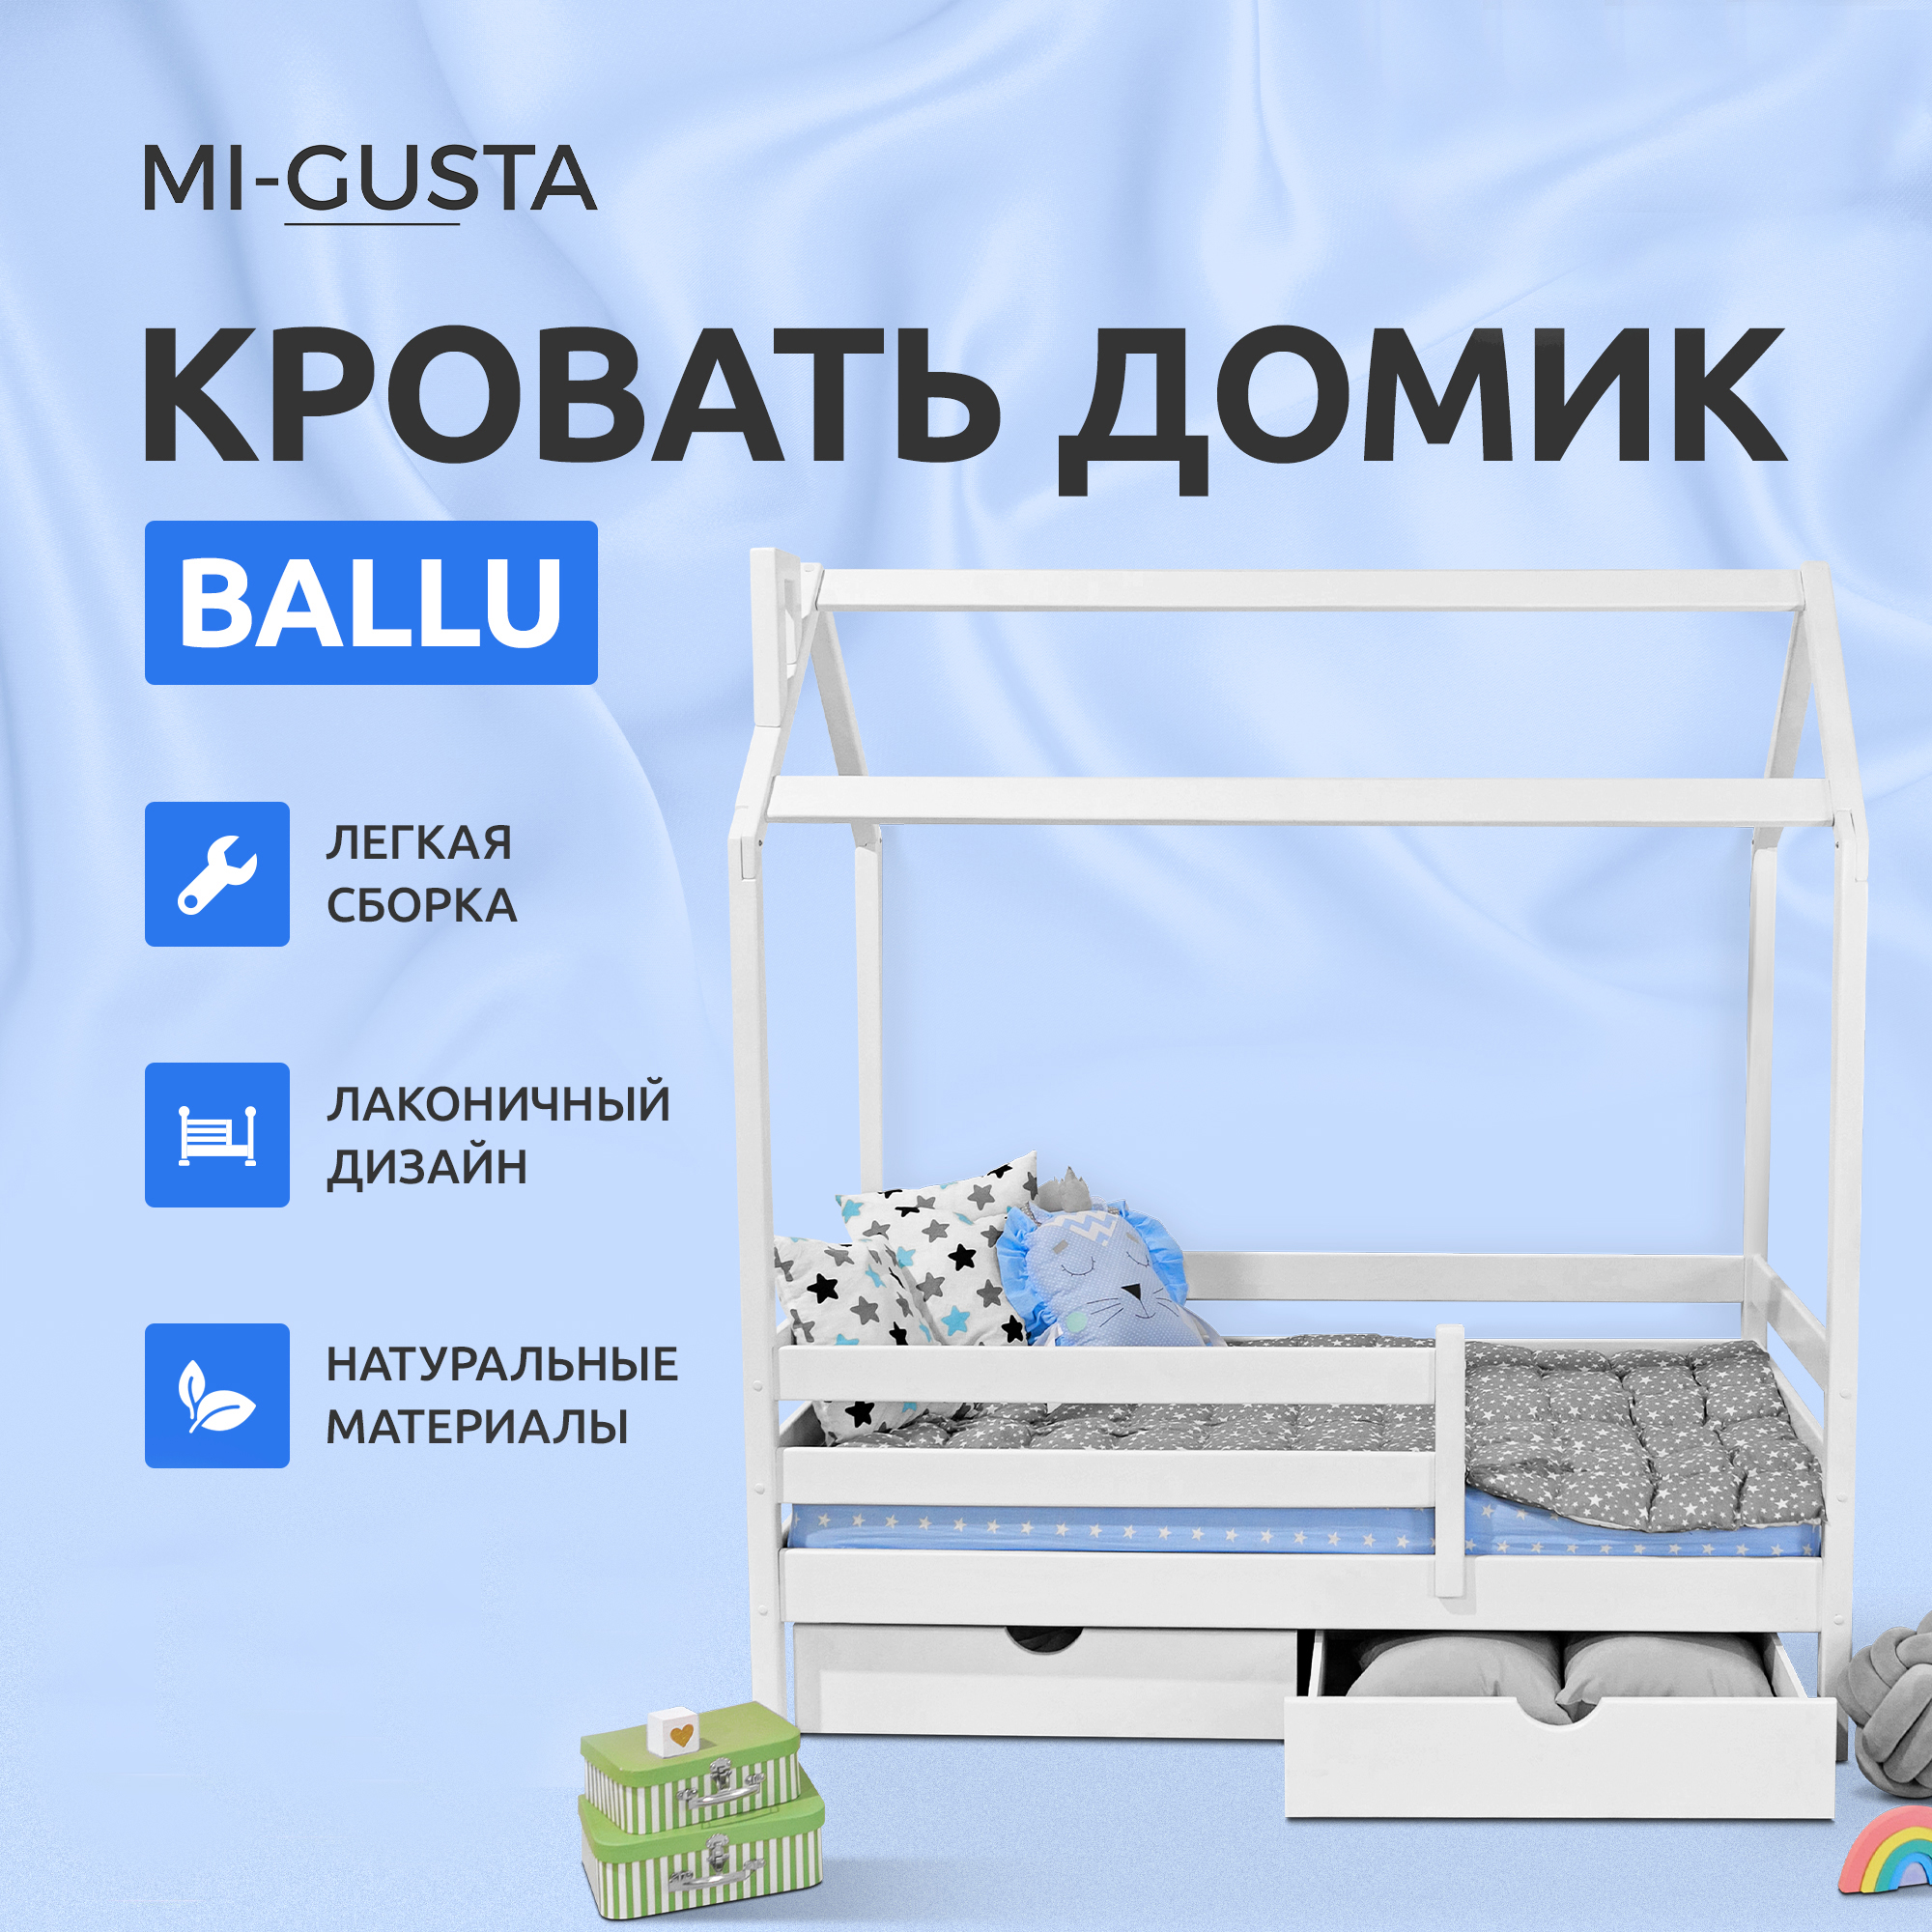 Кровать детская Mi-Gusta Ballu, 189х89х175, береза, кровать-домик, без ящиков осушитель воздуха ballu bd30u 530 вт 5 л до 42 м2 2 режима белый